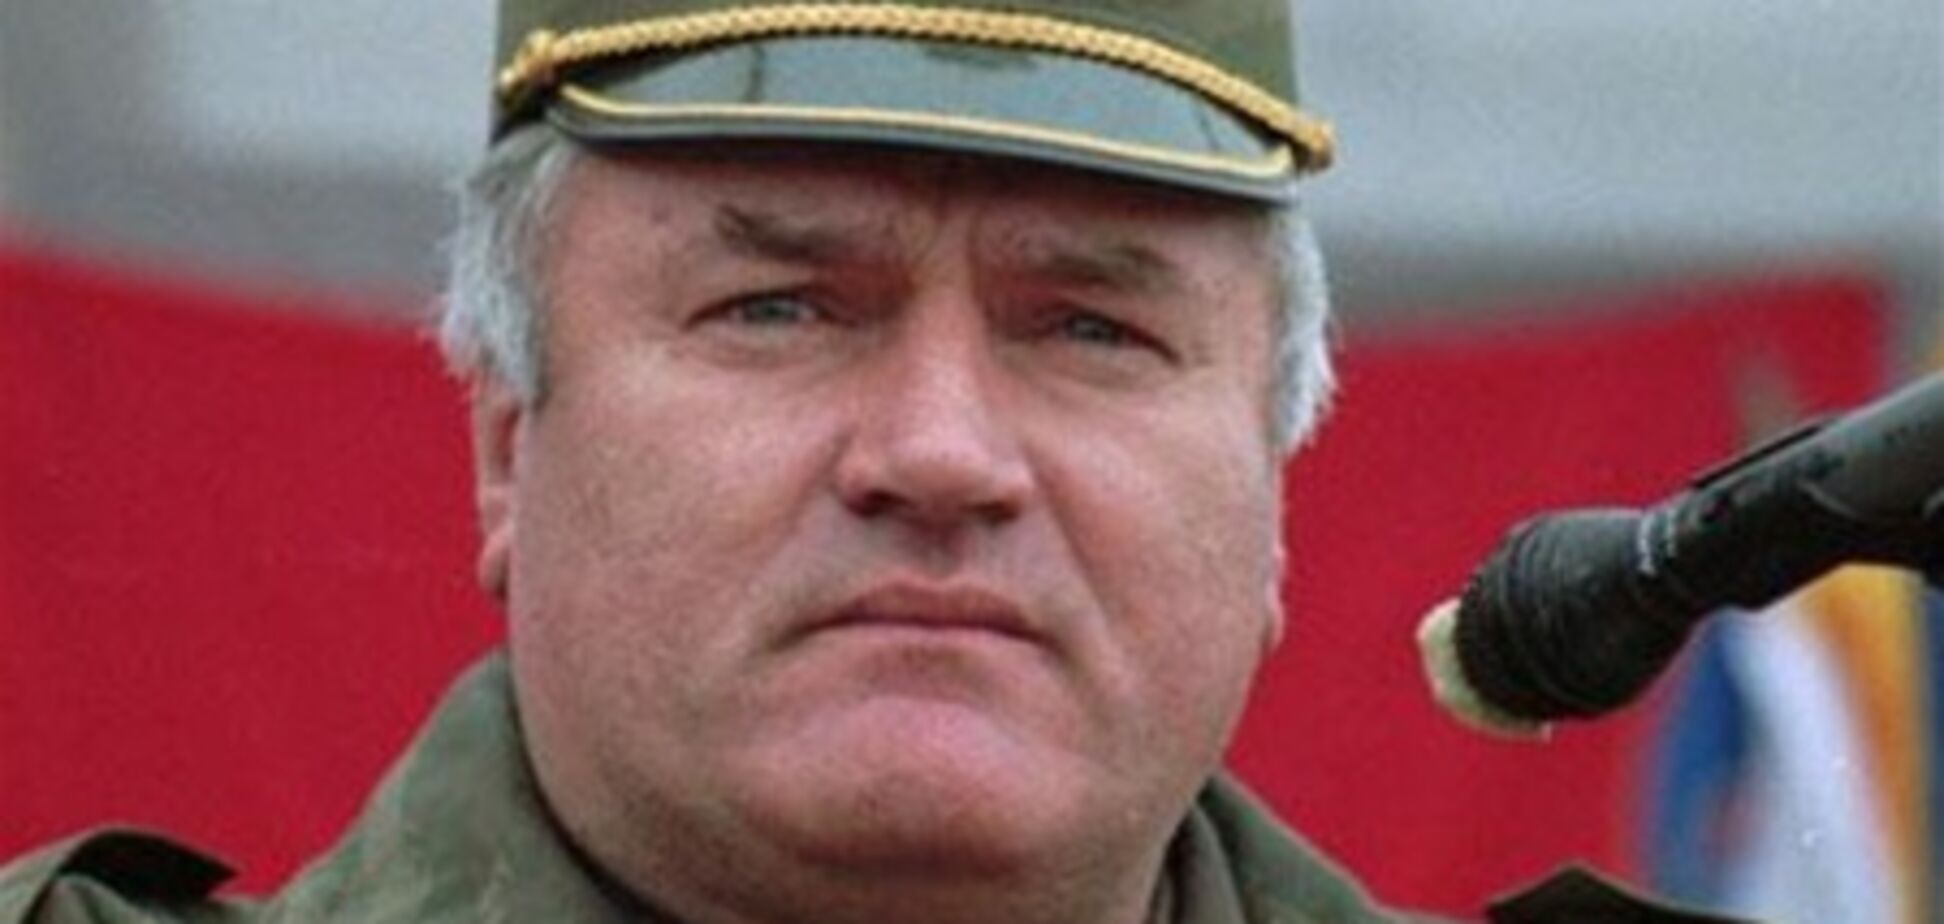 Засідання суду про екстрадицію Младича перенесено через погане самопочуття заарештованого